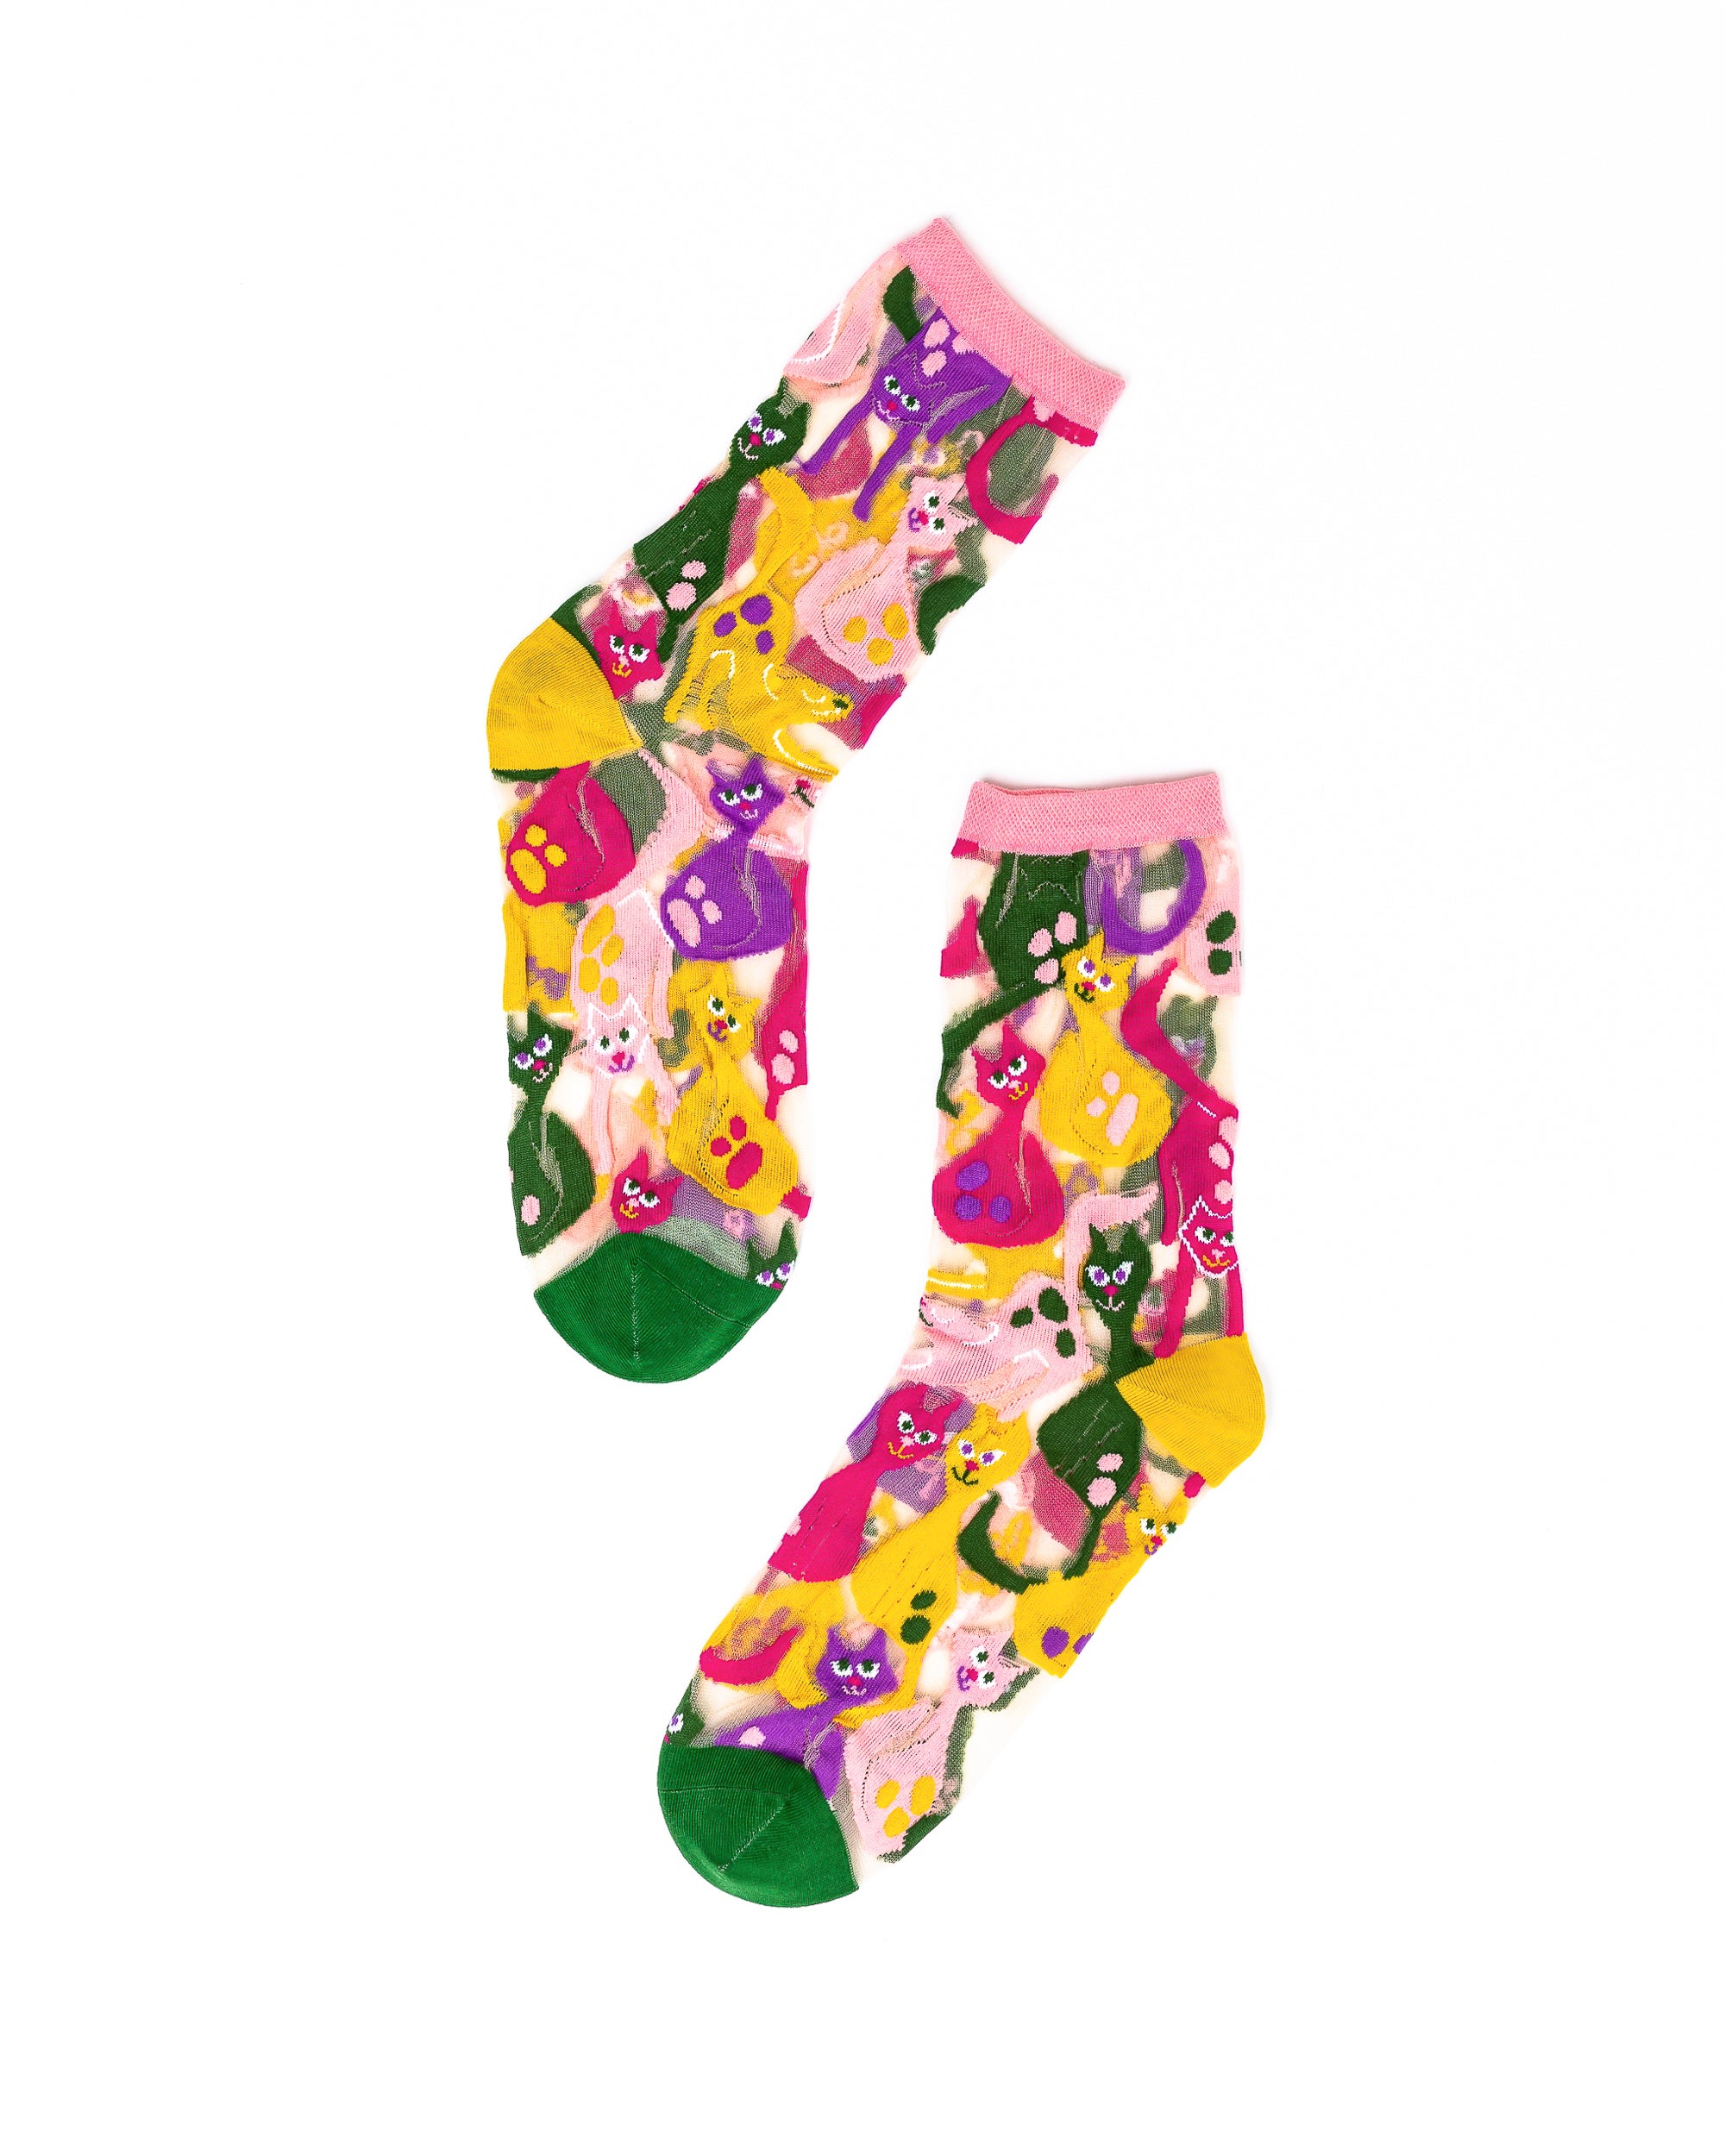 Sheer Cat Socks for Women - Sock Candy